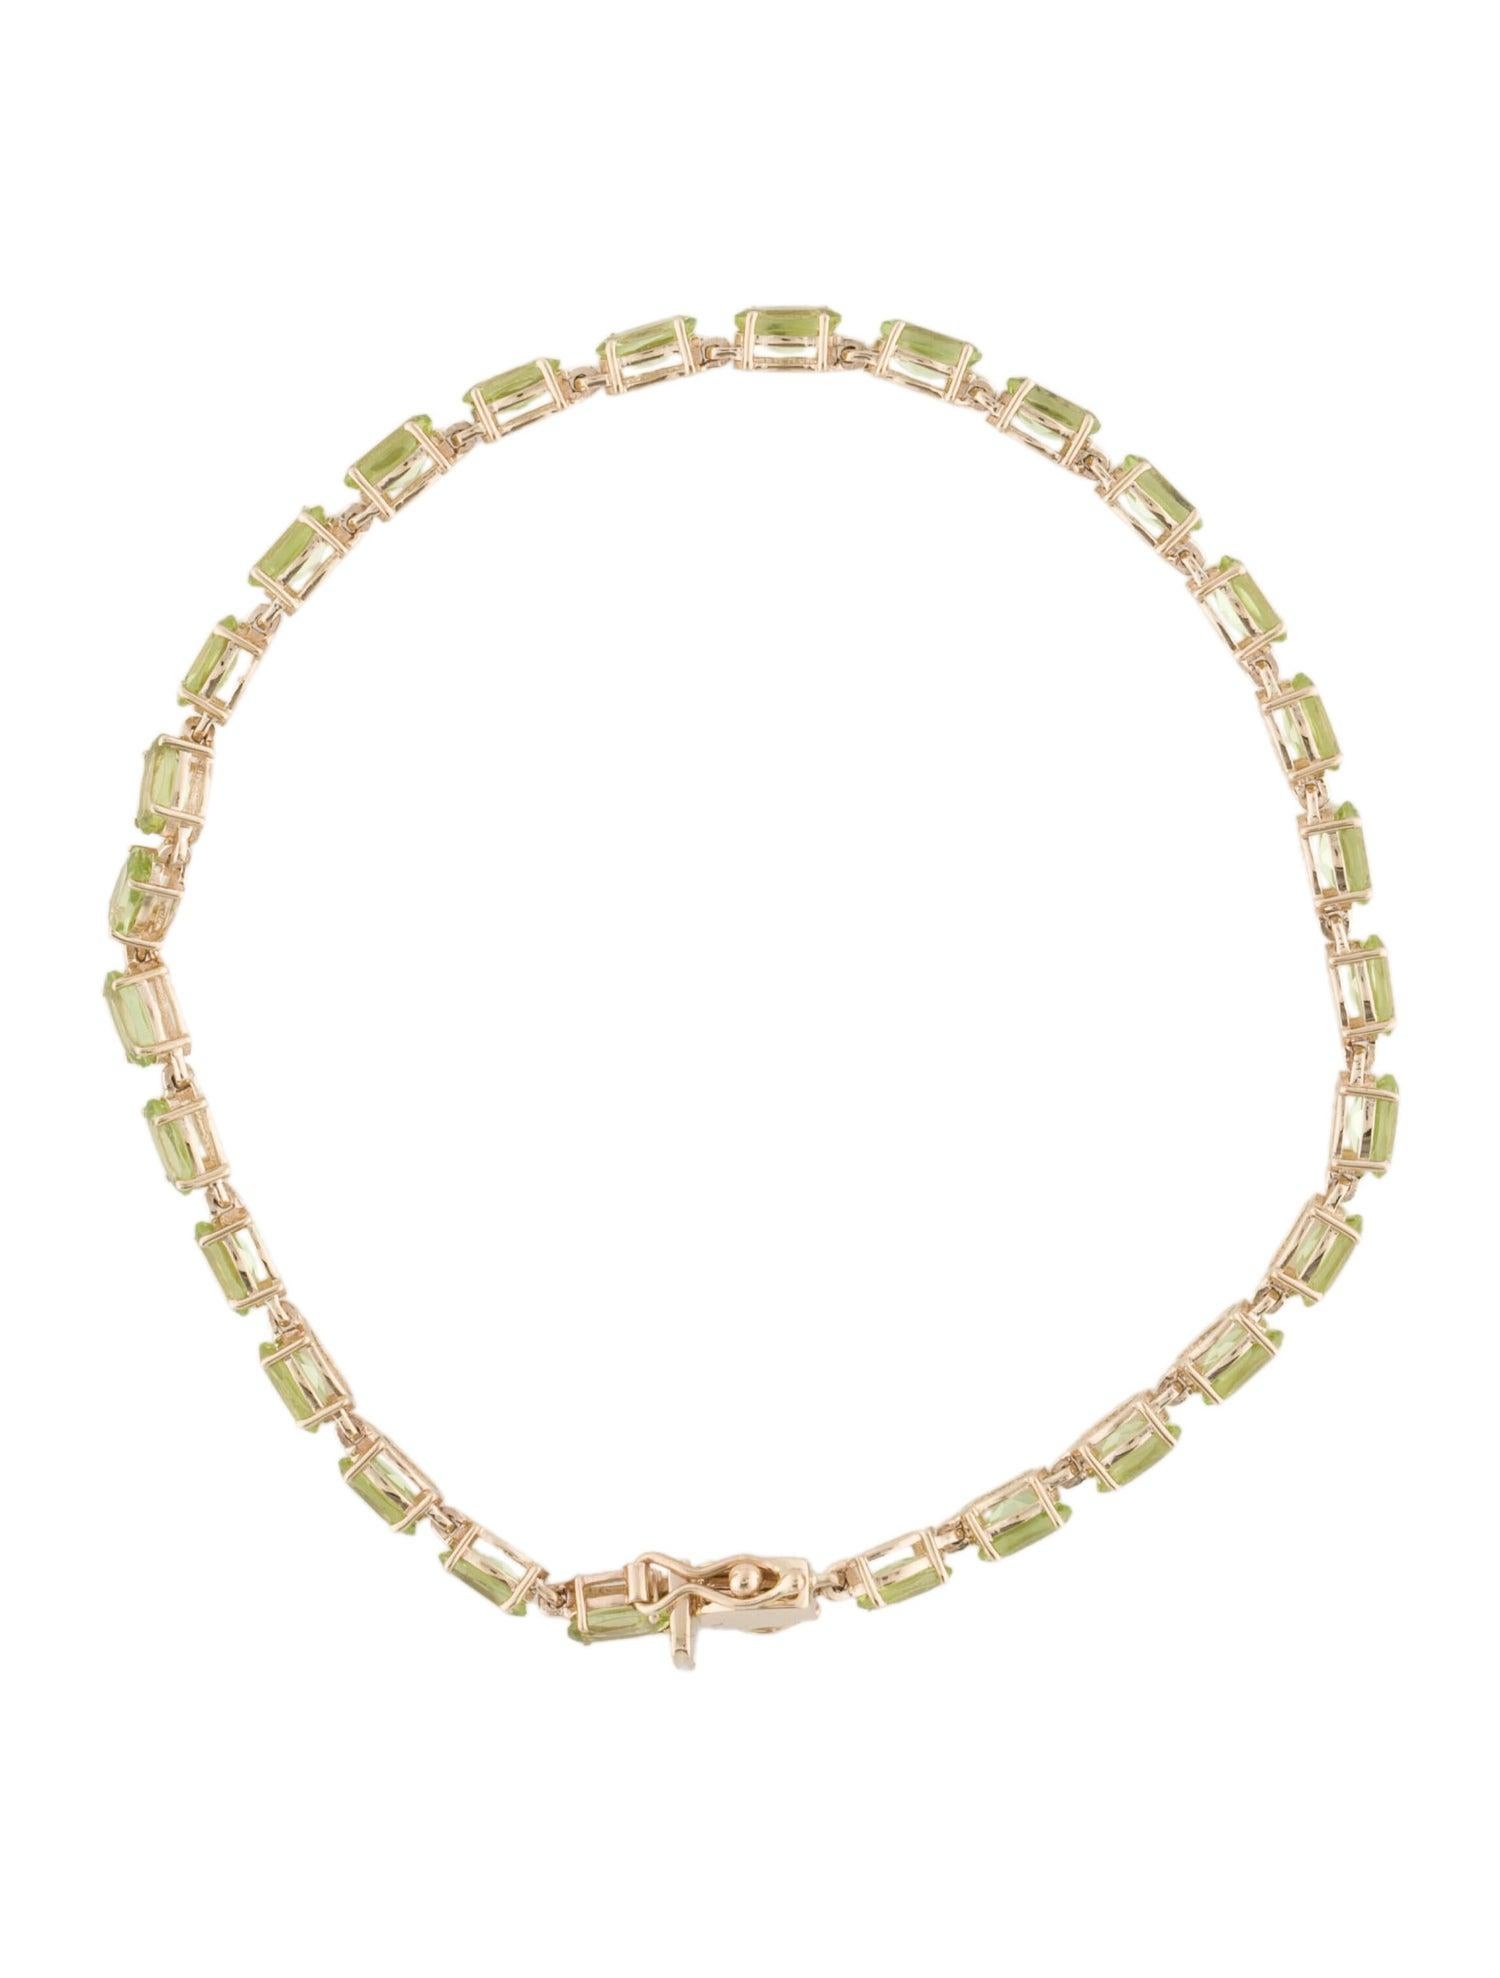 Women's 14K Peridot Link Bracelet - Vibrant Gemstone Elegance, Timeless Luxury Design For Sale